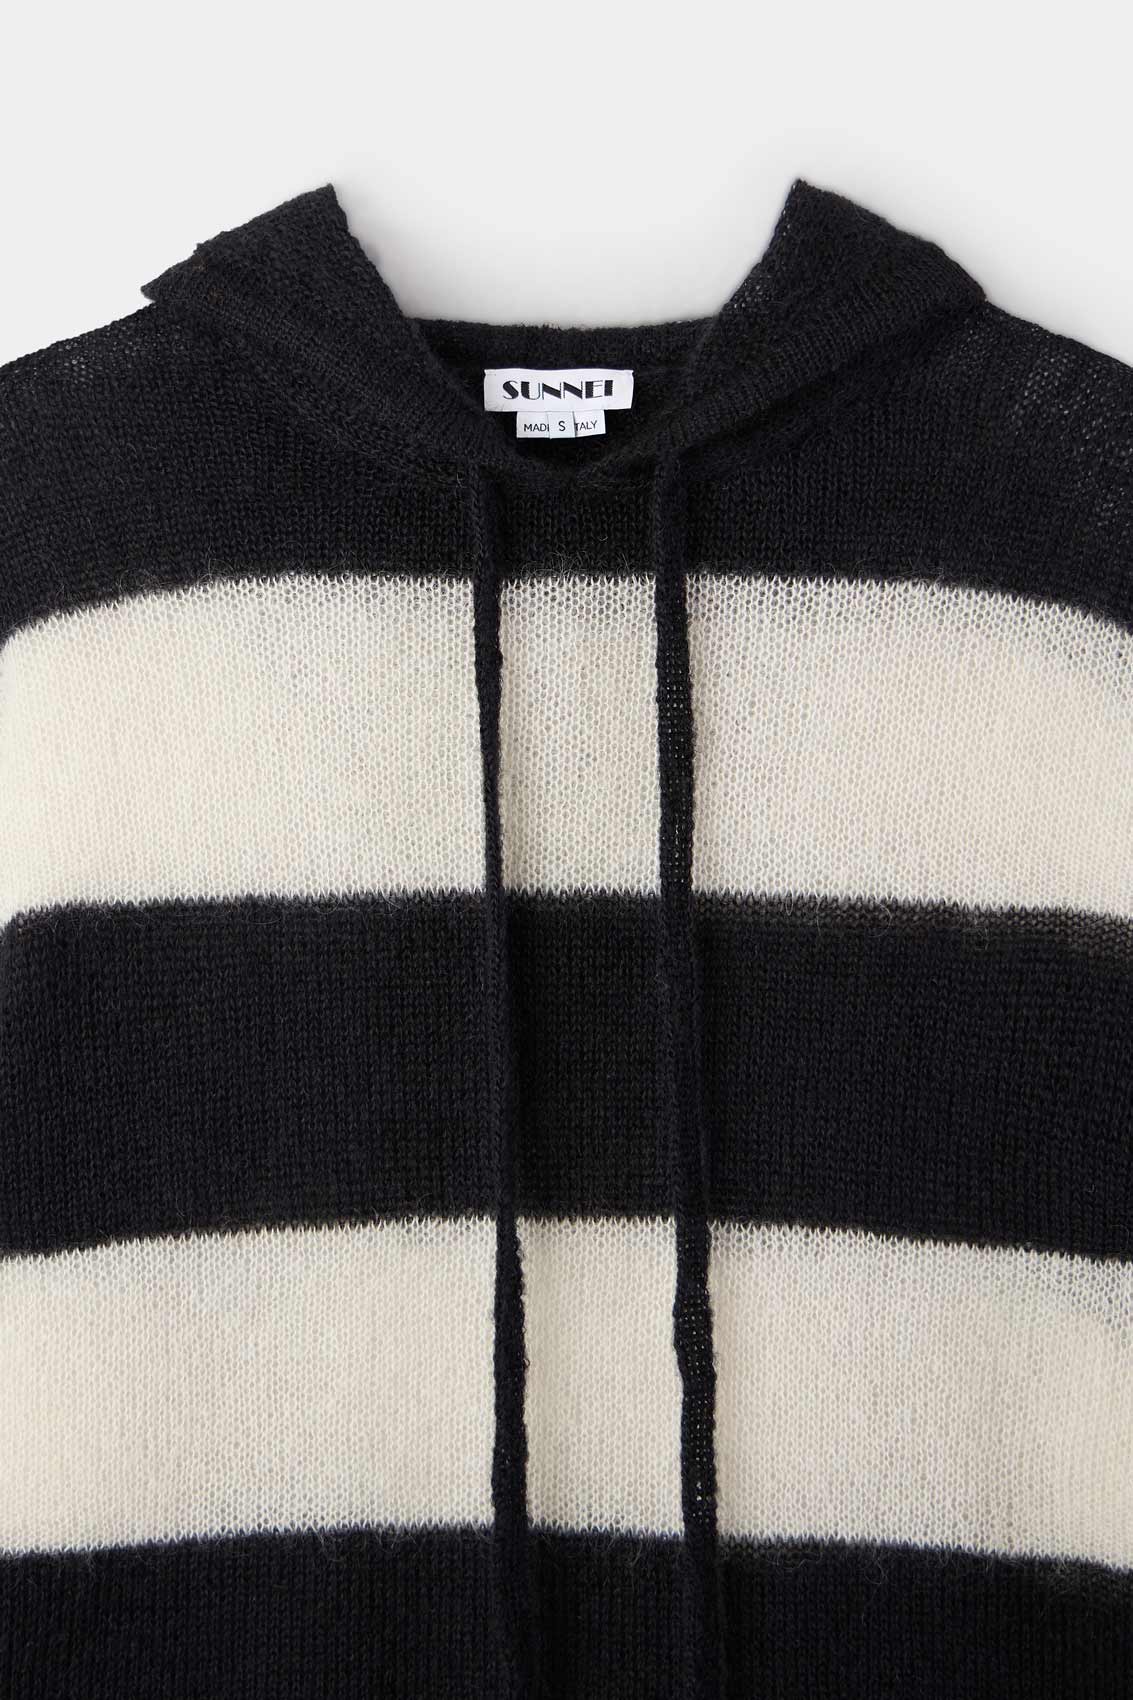 HOODIE / wool / cream & black stripes